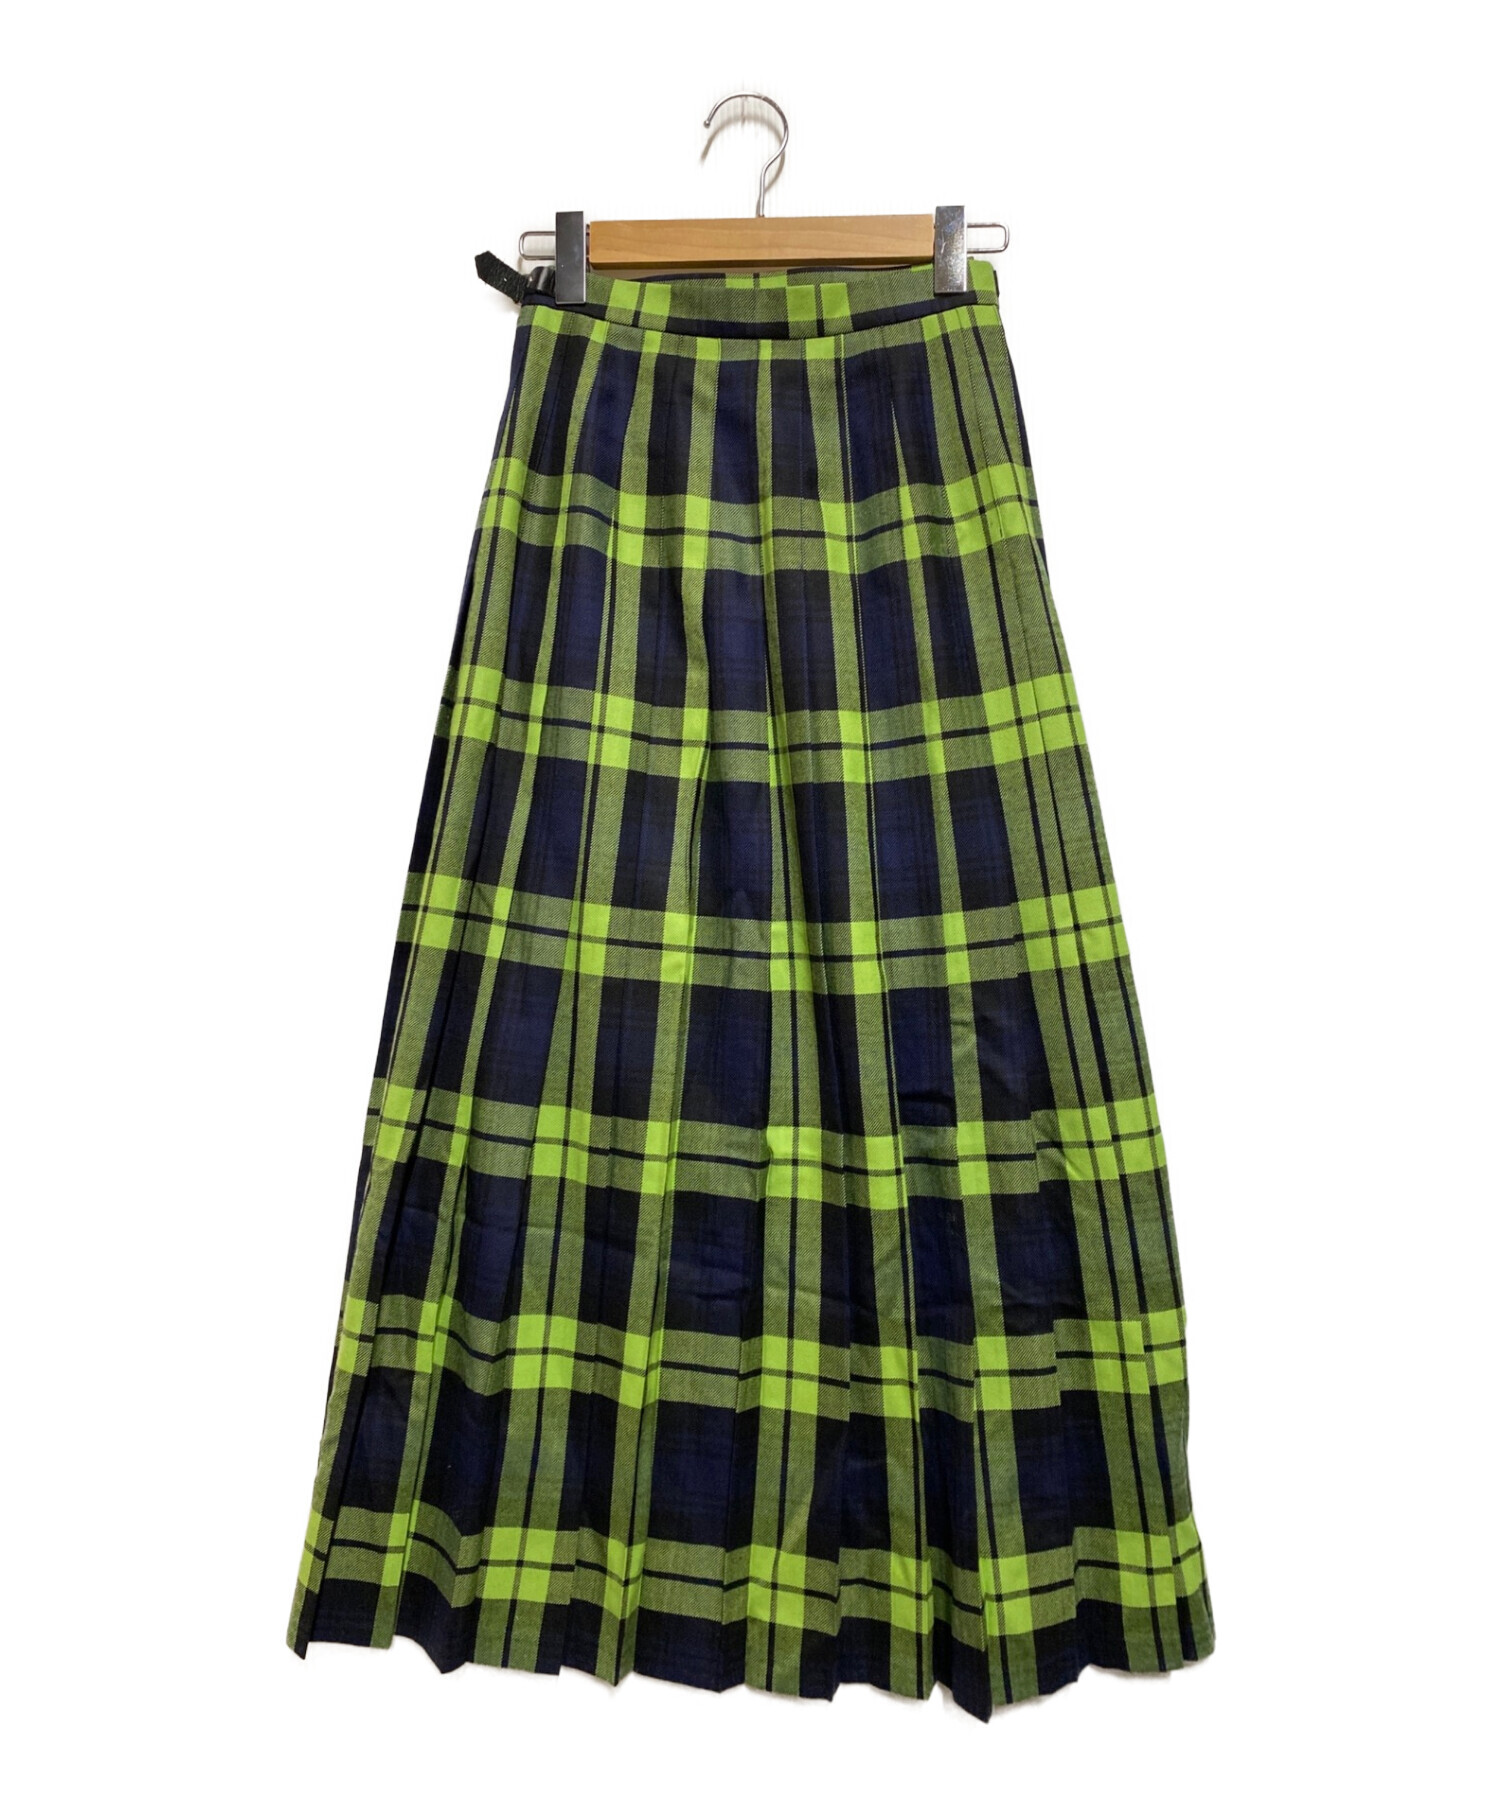 O’NEIL OF DUBLIN for RHC  Skirt